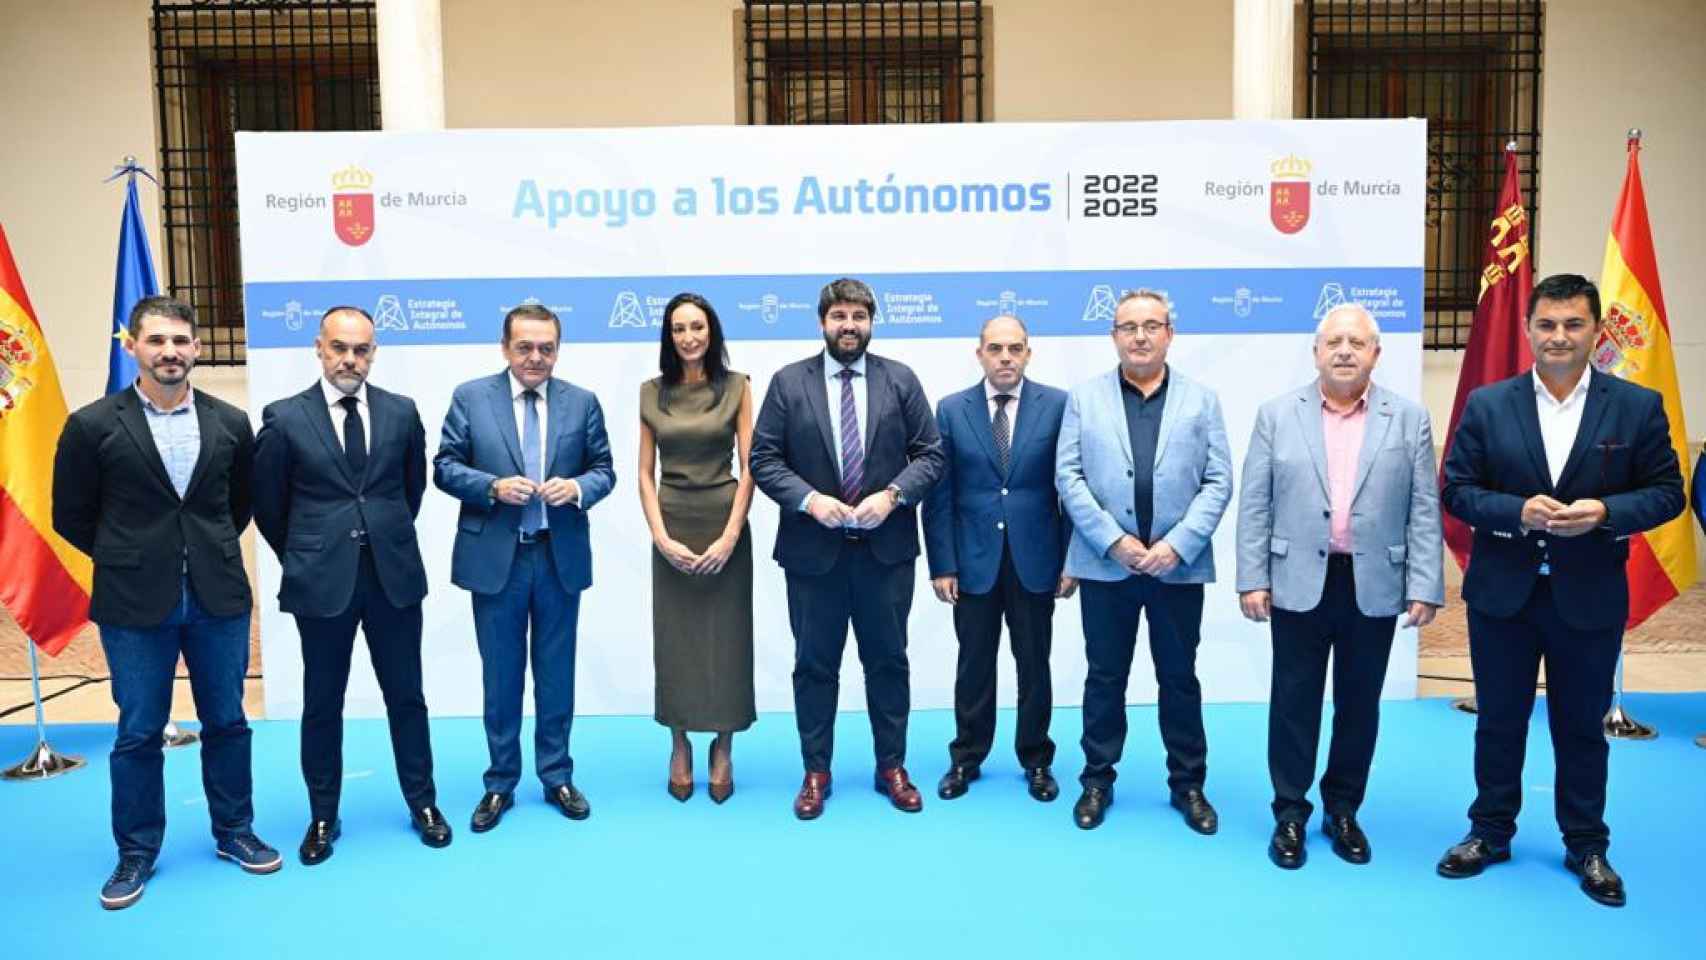 El presidente de Murcia, Fernando López Miras, este viernes, en el Palacio de San Esteban, donde ha firmado la Estrategia del Trabajo Autónomo con representantes sectoriales de ATA, UPTA y UATAE, así como por los sindicatos UGT y CC OO, y la patronal murciana CROEM.